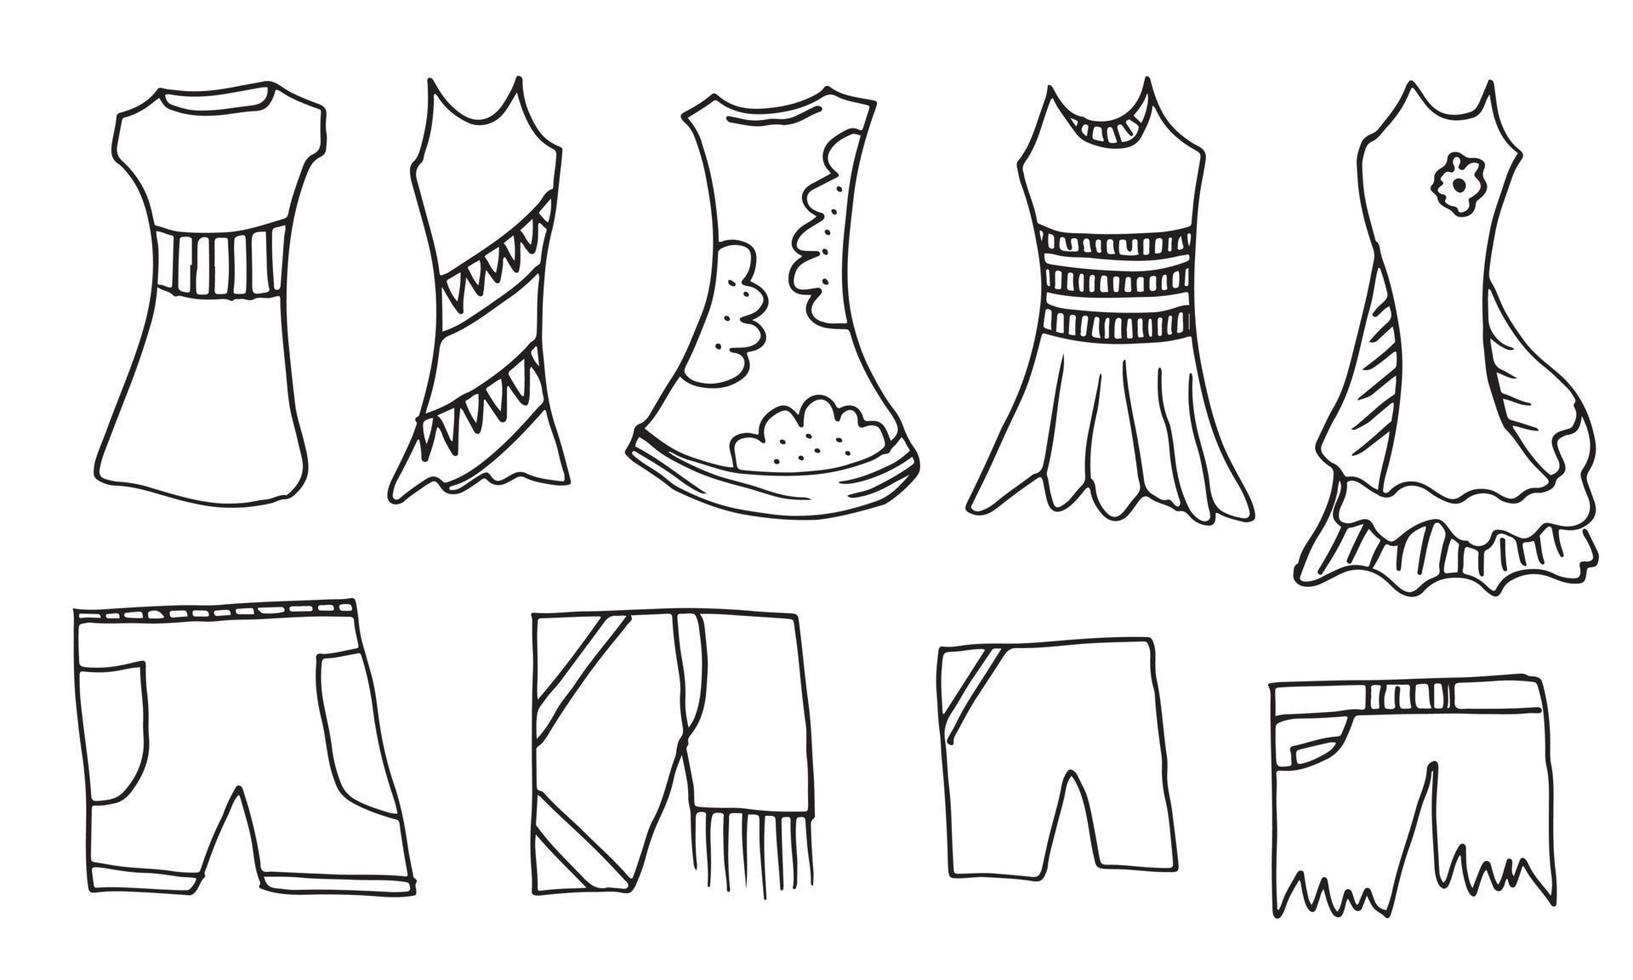 doodle disegno a mano con vestiti per bambini. illustrazione vettoriale di linee e pagine da colorare per bambini